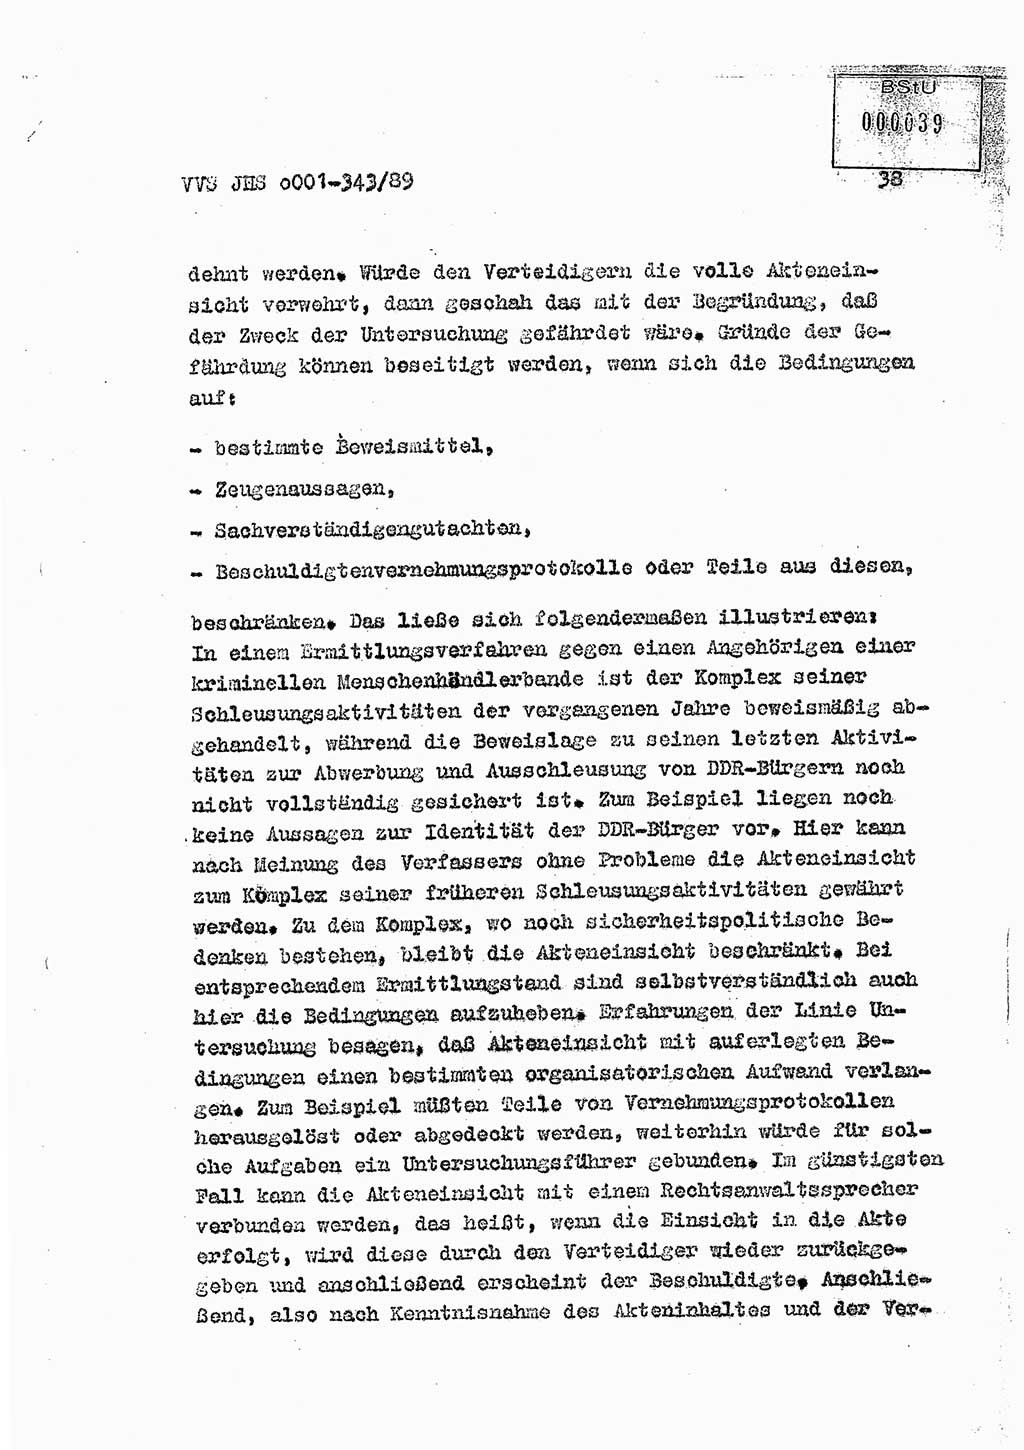 Diplomarbeit Offiziersschüler Axel Henschke (HA Ⅸ/9), Ministerium für Staatssicherheit (MfS) [Deutsche Demokratische Republik (DDR)], Juristische Hochschule (JHS), Vertrauliche Verschlußsache (VVS) o001-343/89, Potsdam 1989, Seite 38 (Dipl.-Arb. MfS DDR JHS VVS o001-343/89 1989, S. 38)